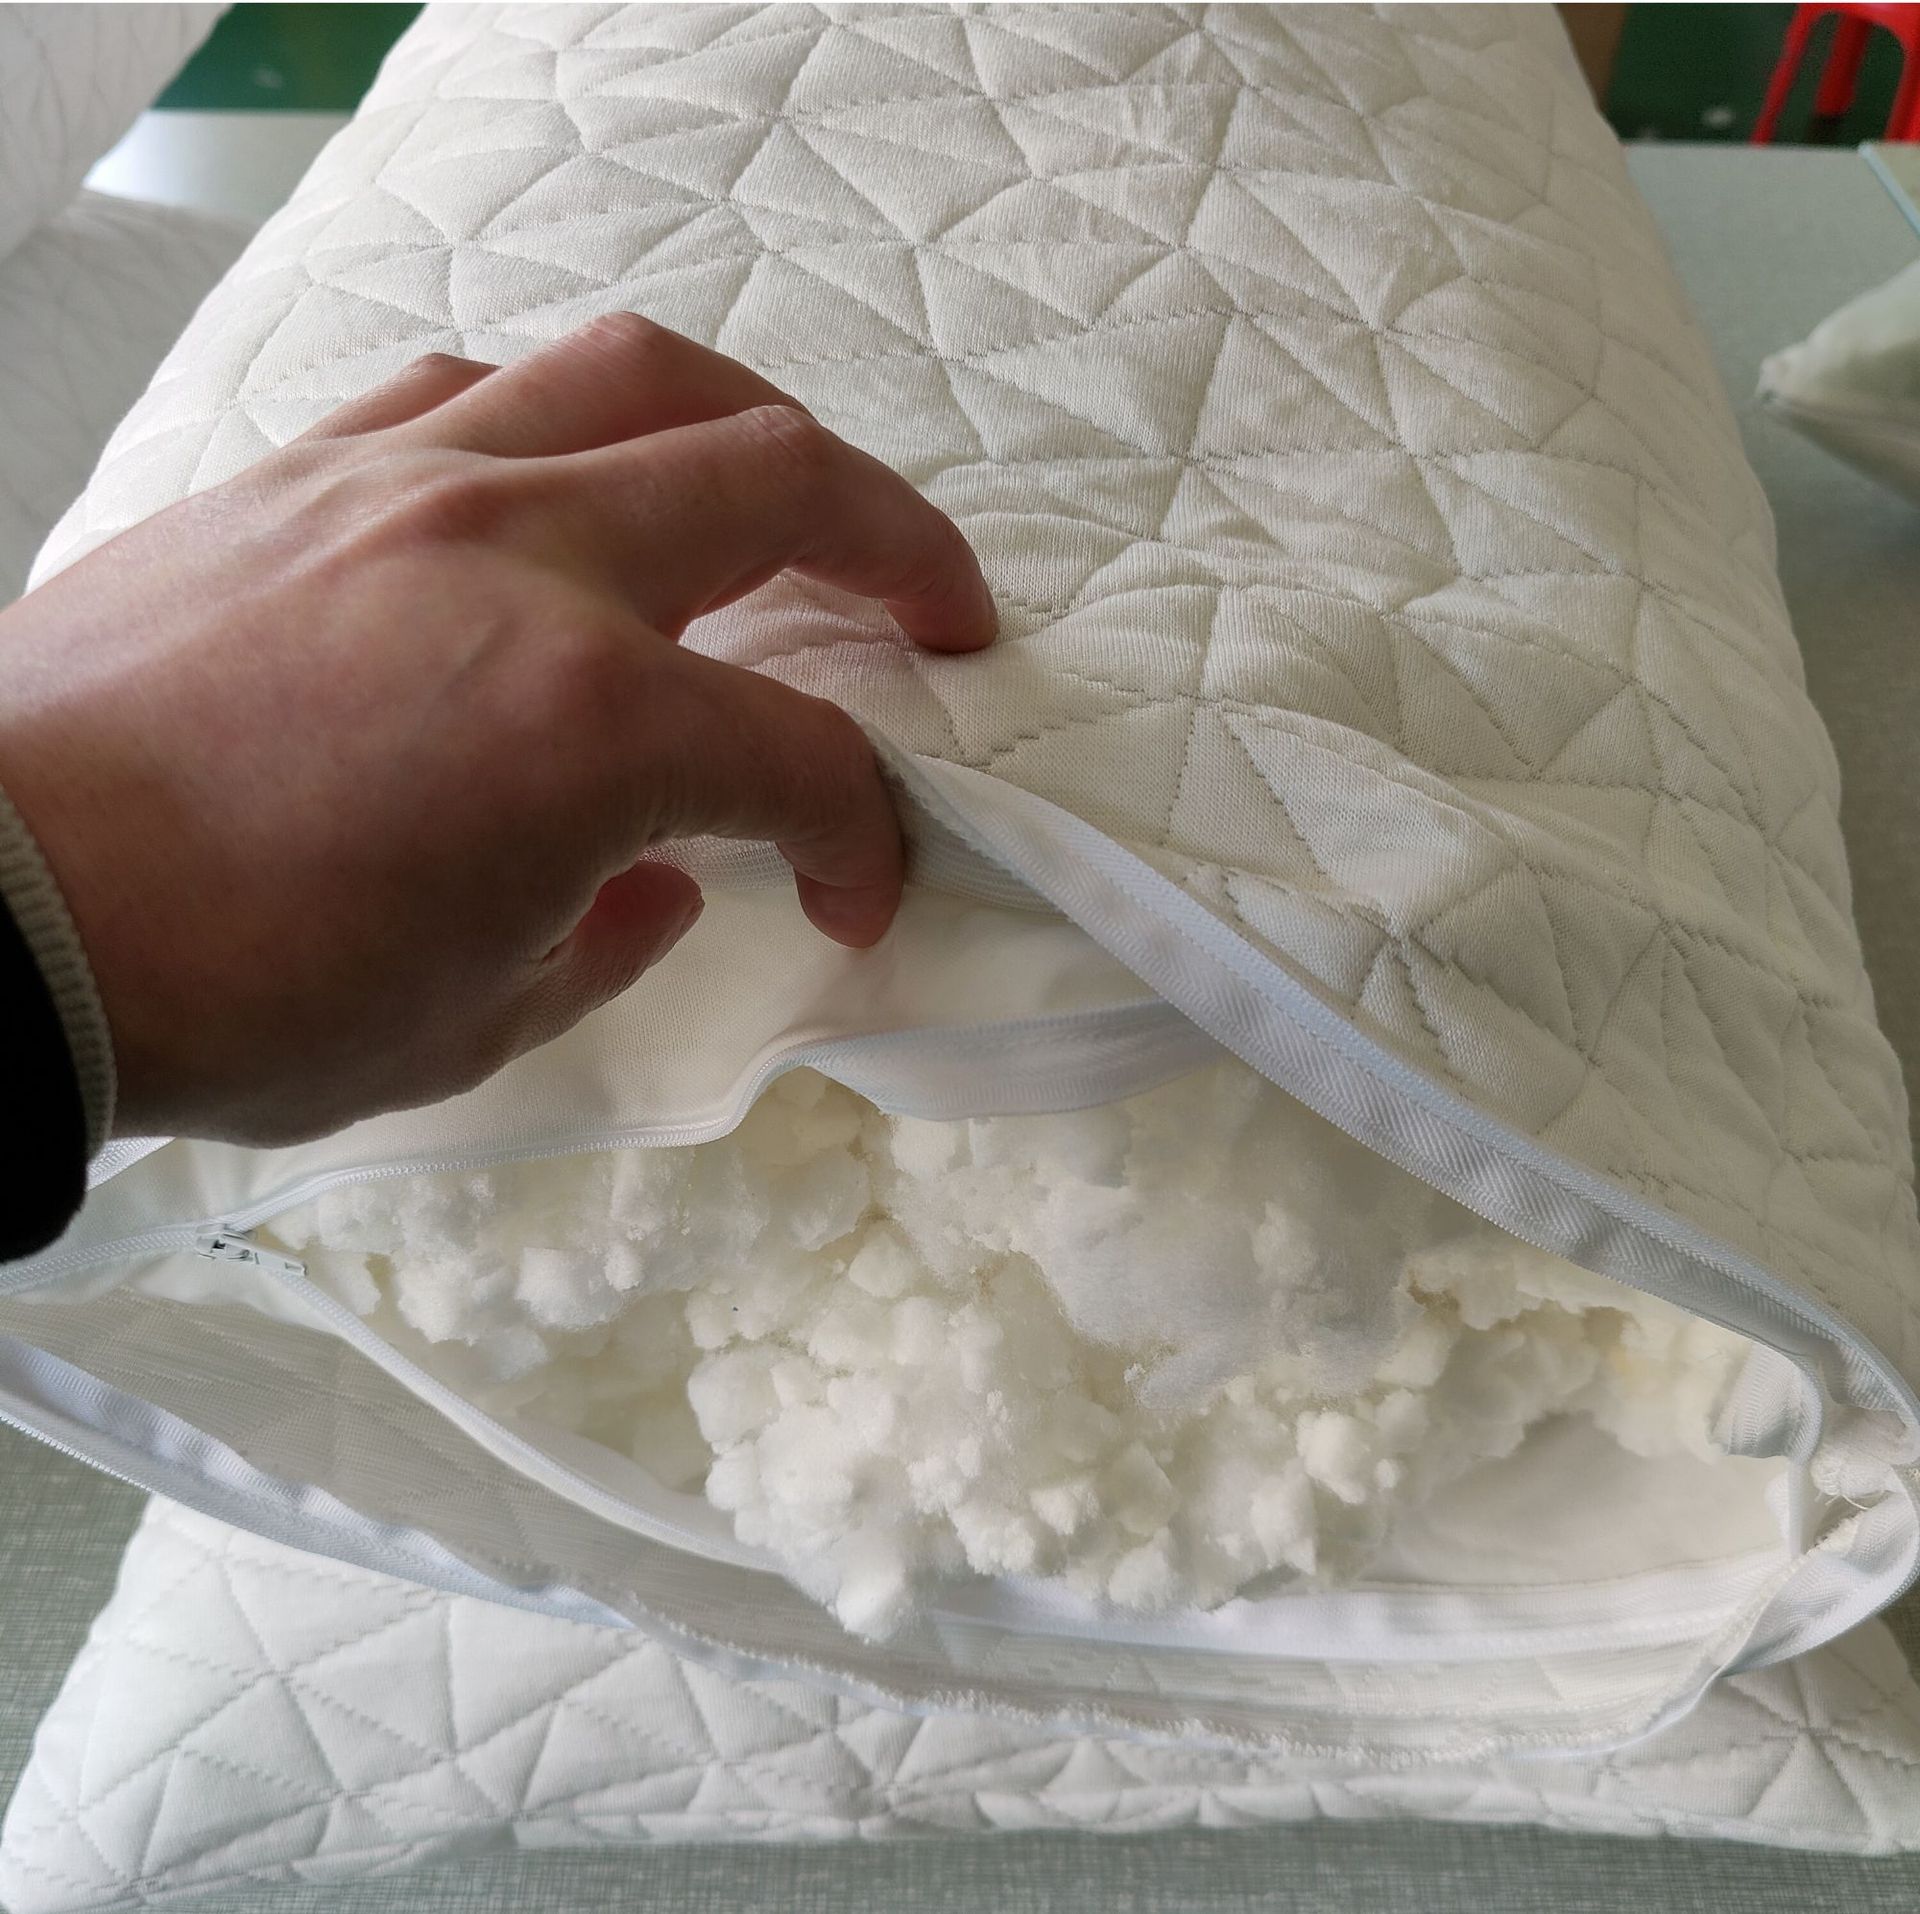 竹纖維枕頭舒適柔軟透氣碎海綿枕方塊竹記憶枕套花色多樣選擇